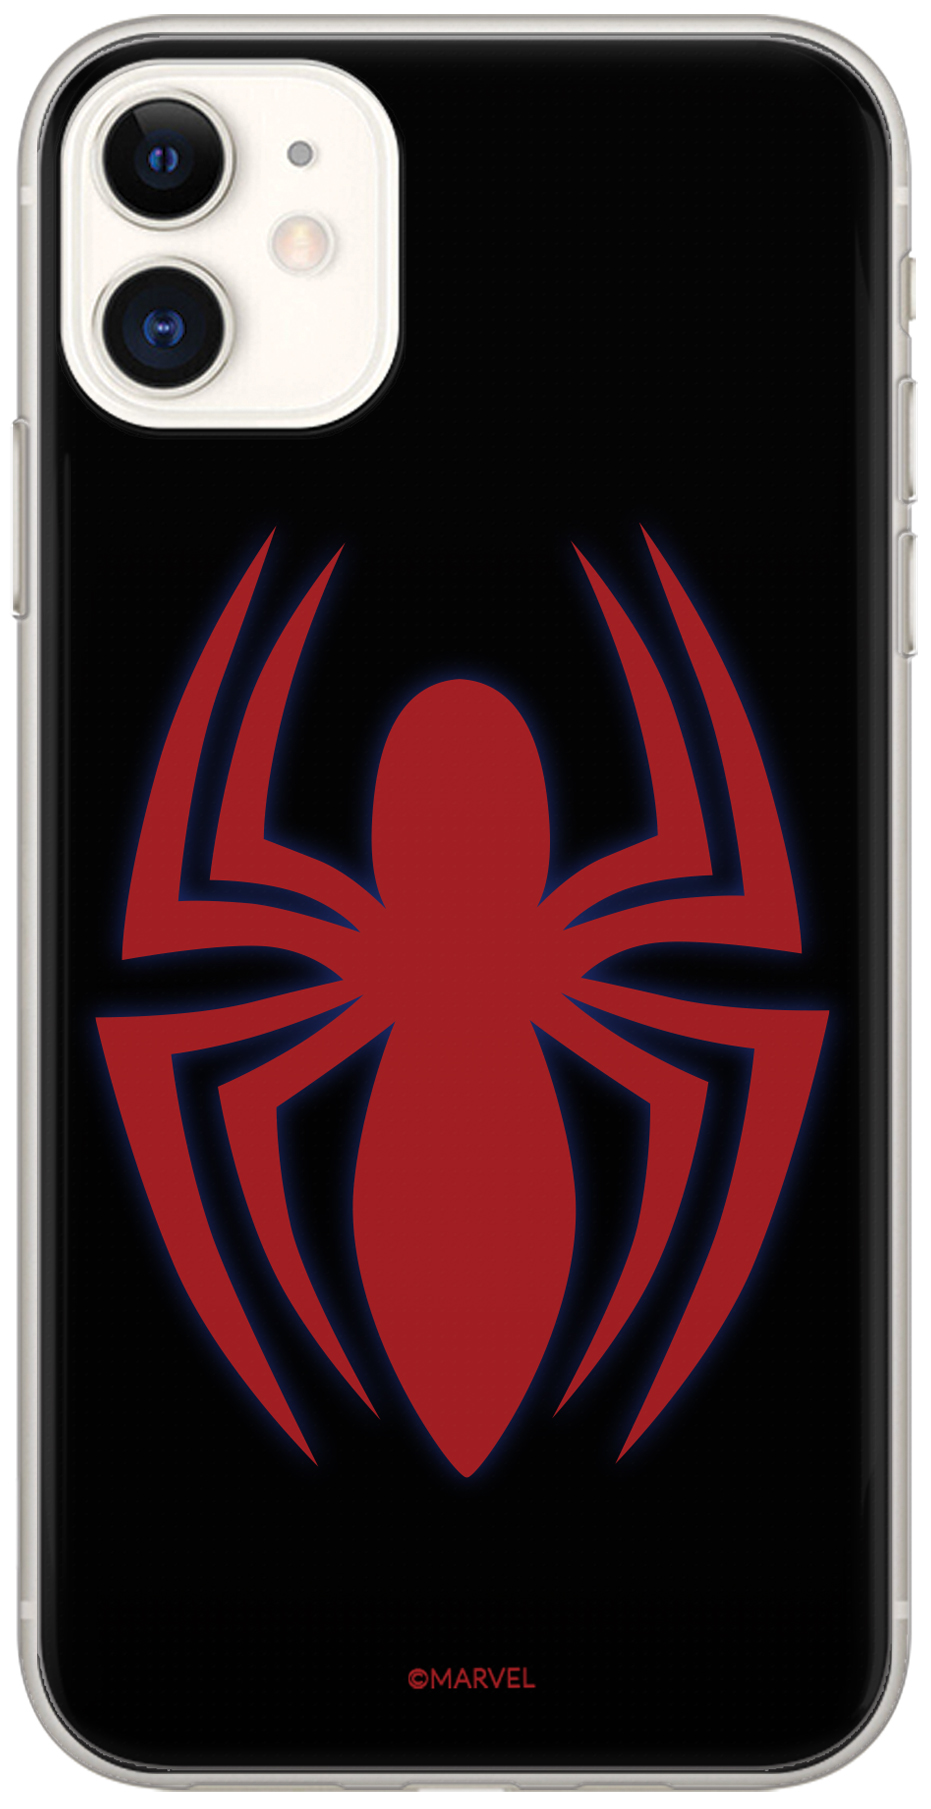 Ochranný kryt pro iPhone 6 / 6S - Marvel, Spider Man 018